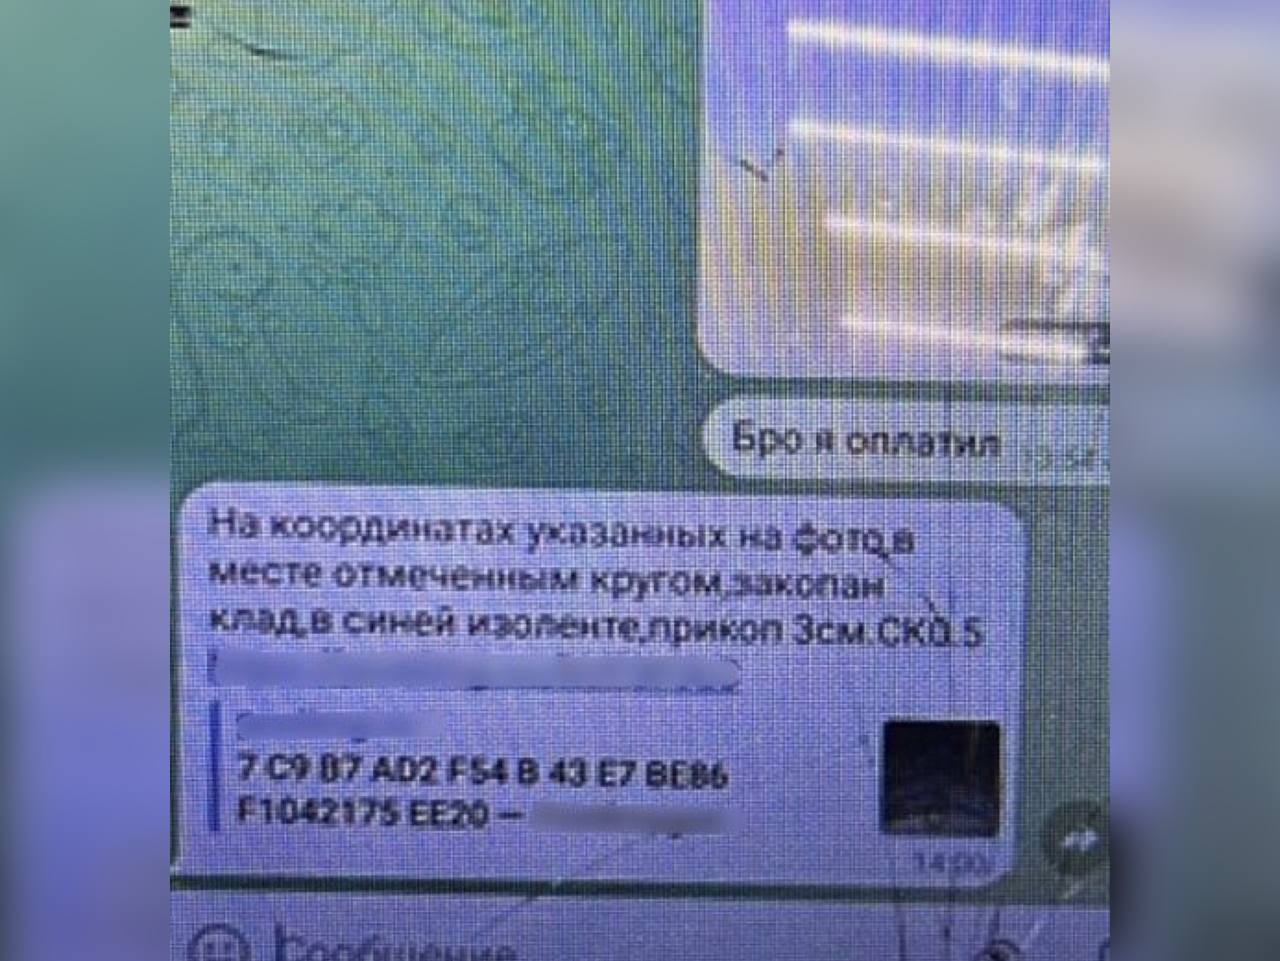 Астраханку привлекли к ответственности за дискредитацию ВС РФ, а её мужа - за хранение наркотиков